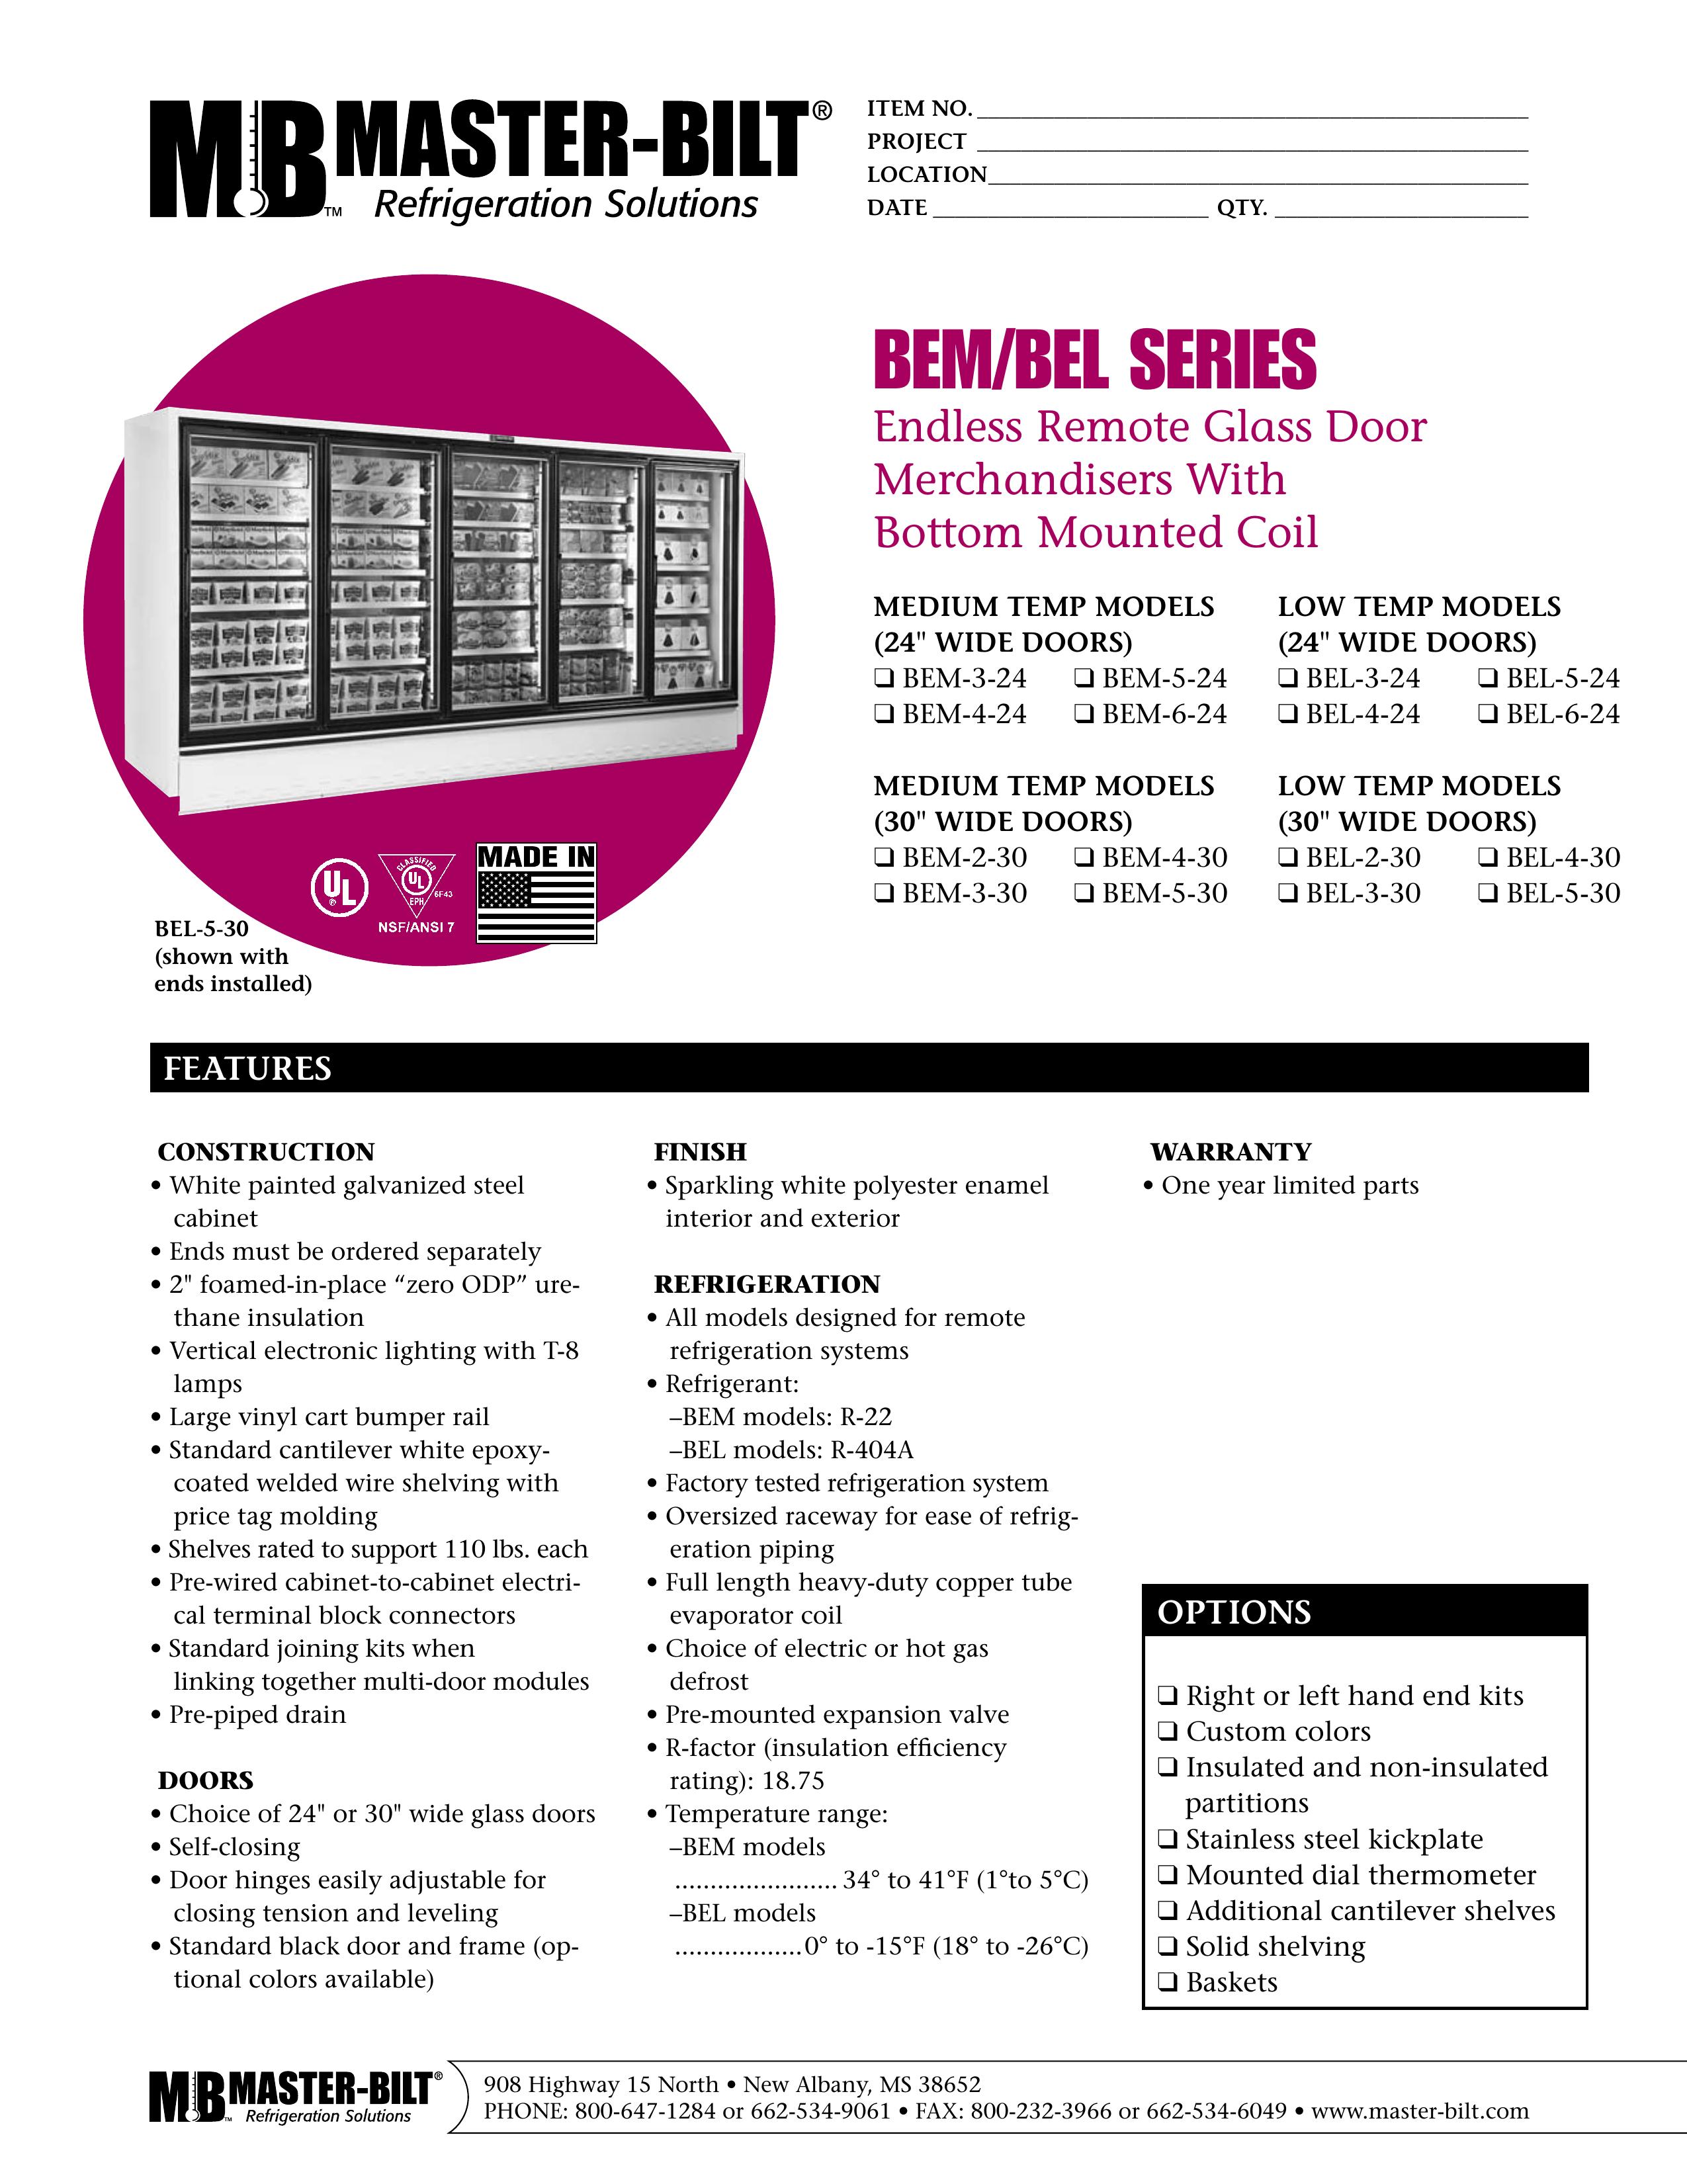 Master Bilt BEL-3-24 Refrigerator User Manual